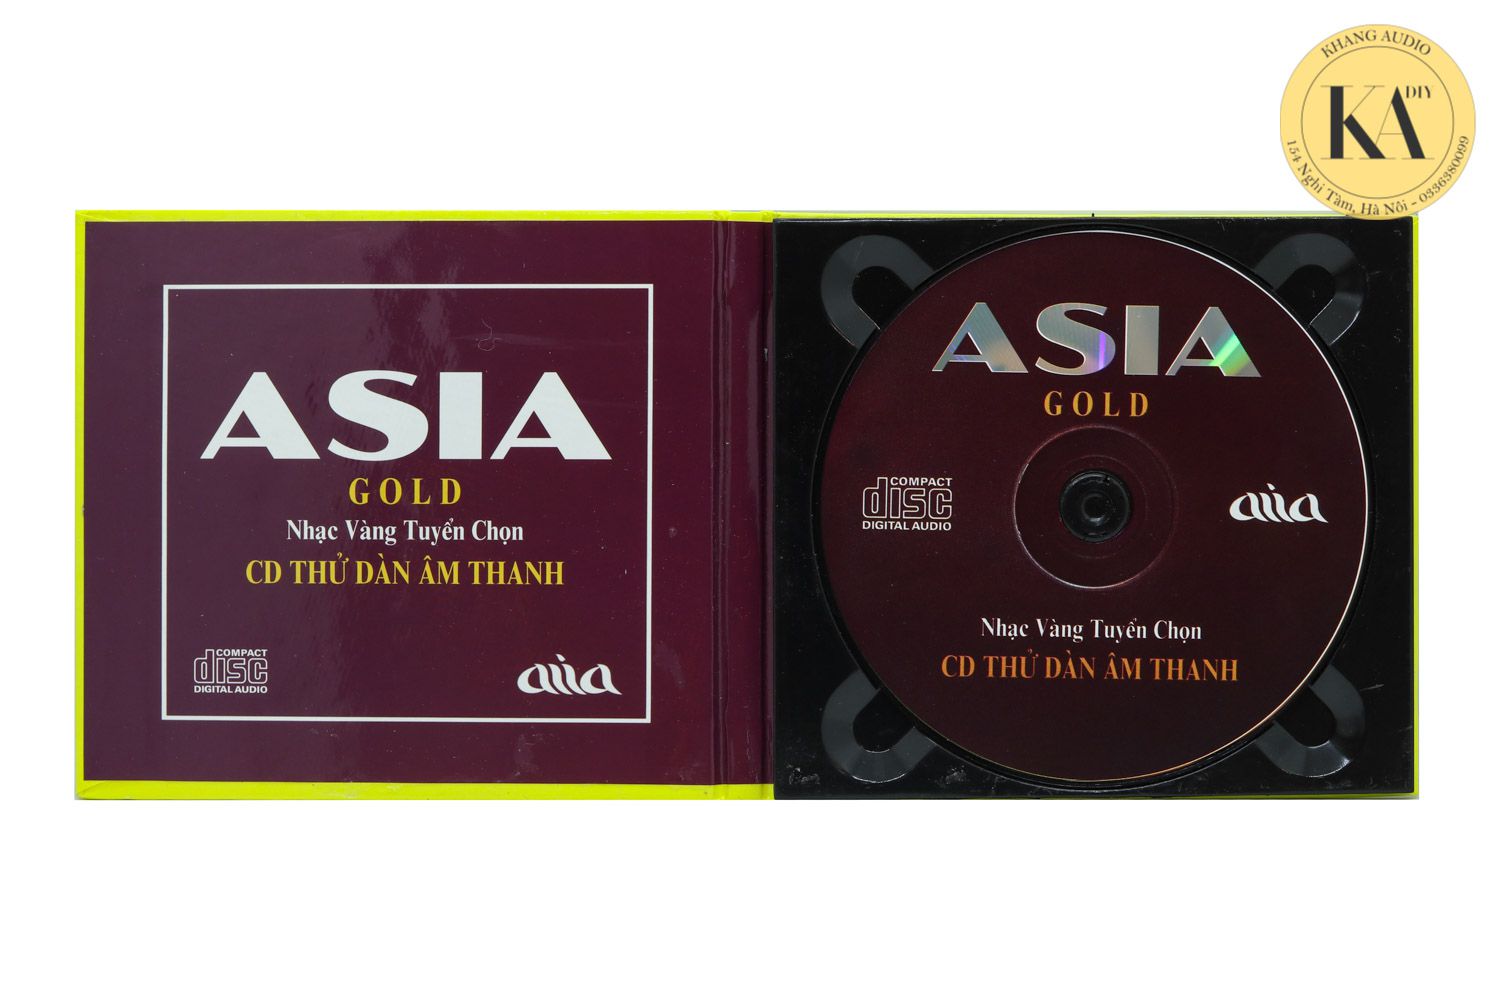 Nhạc Vàng Tuyển Chọn - ASIA GOLD Khang Audio 0336380099